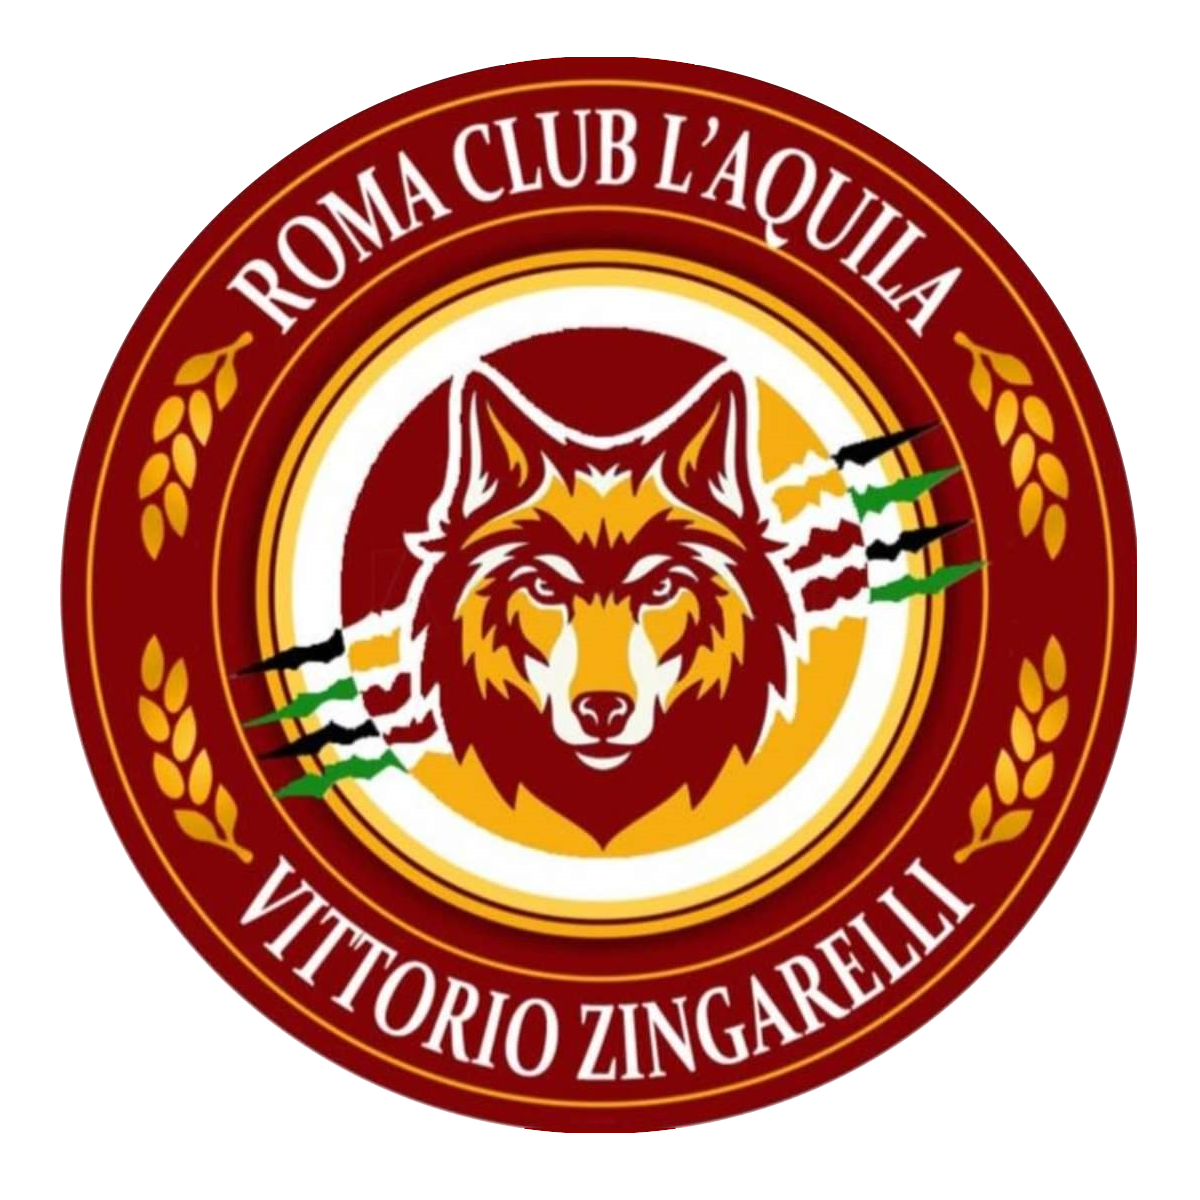 Roma Club L'Aquila